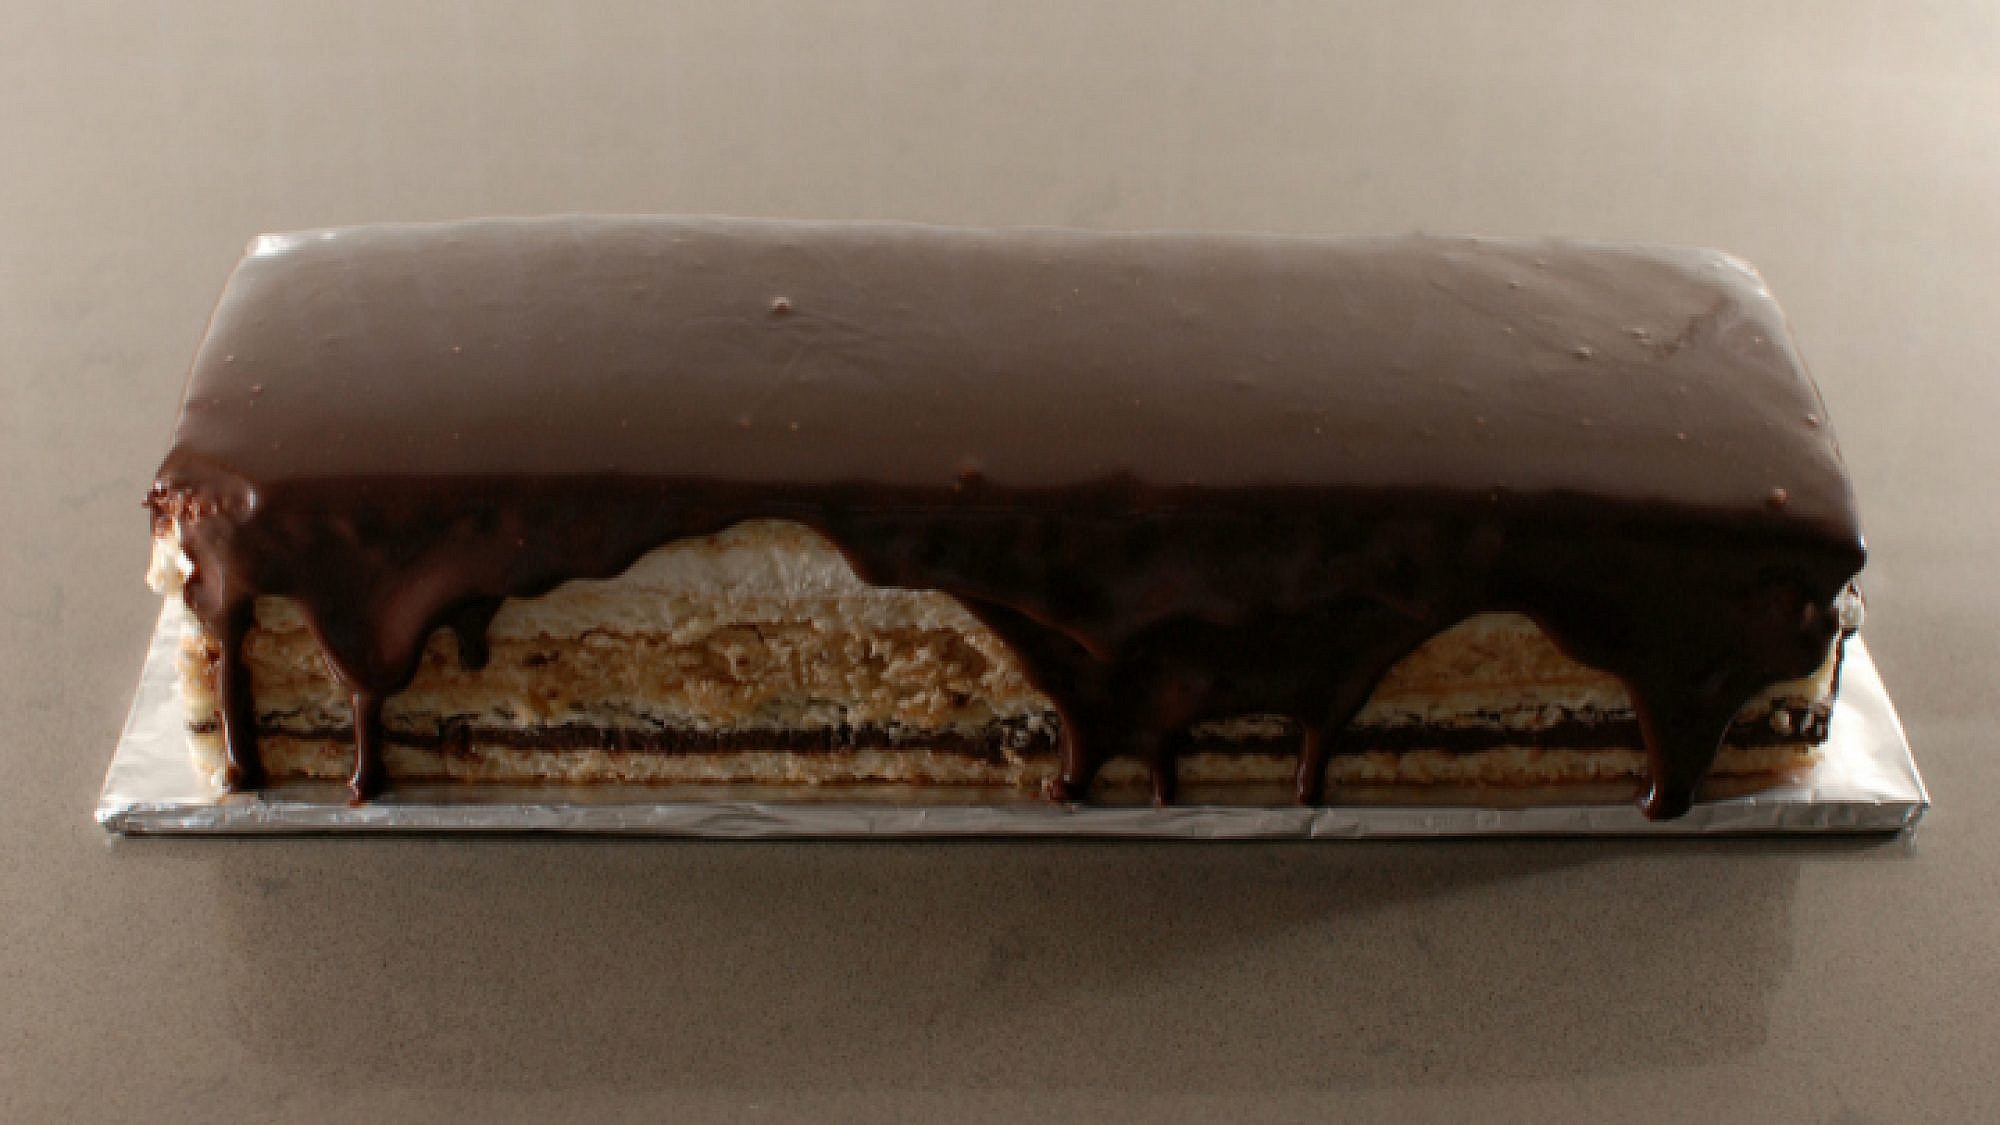 עוגת מרז'ולן - עוגת שכבות על בסיס מרנג אגוזים במילוי וניל, שוקולד וקרמל - אגוזים | צילום: בלוג פצפוצים